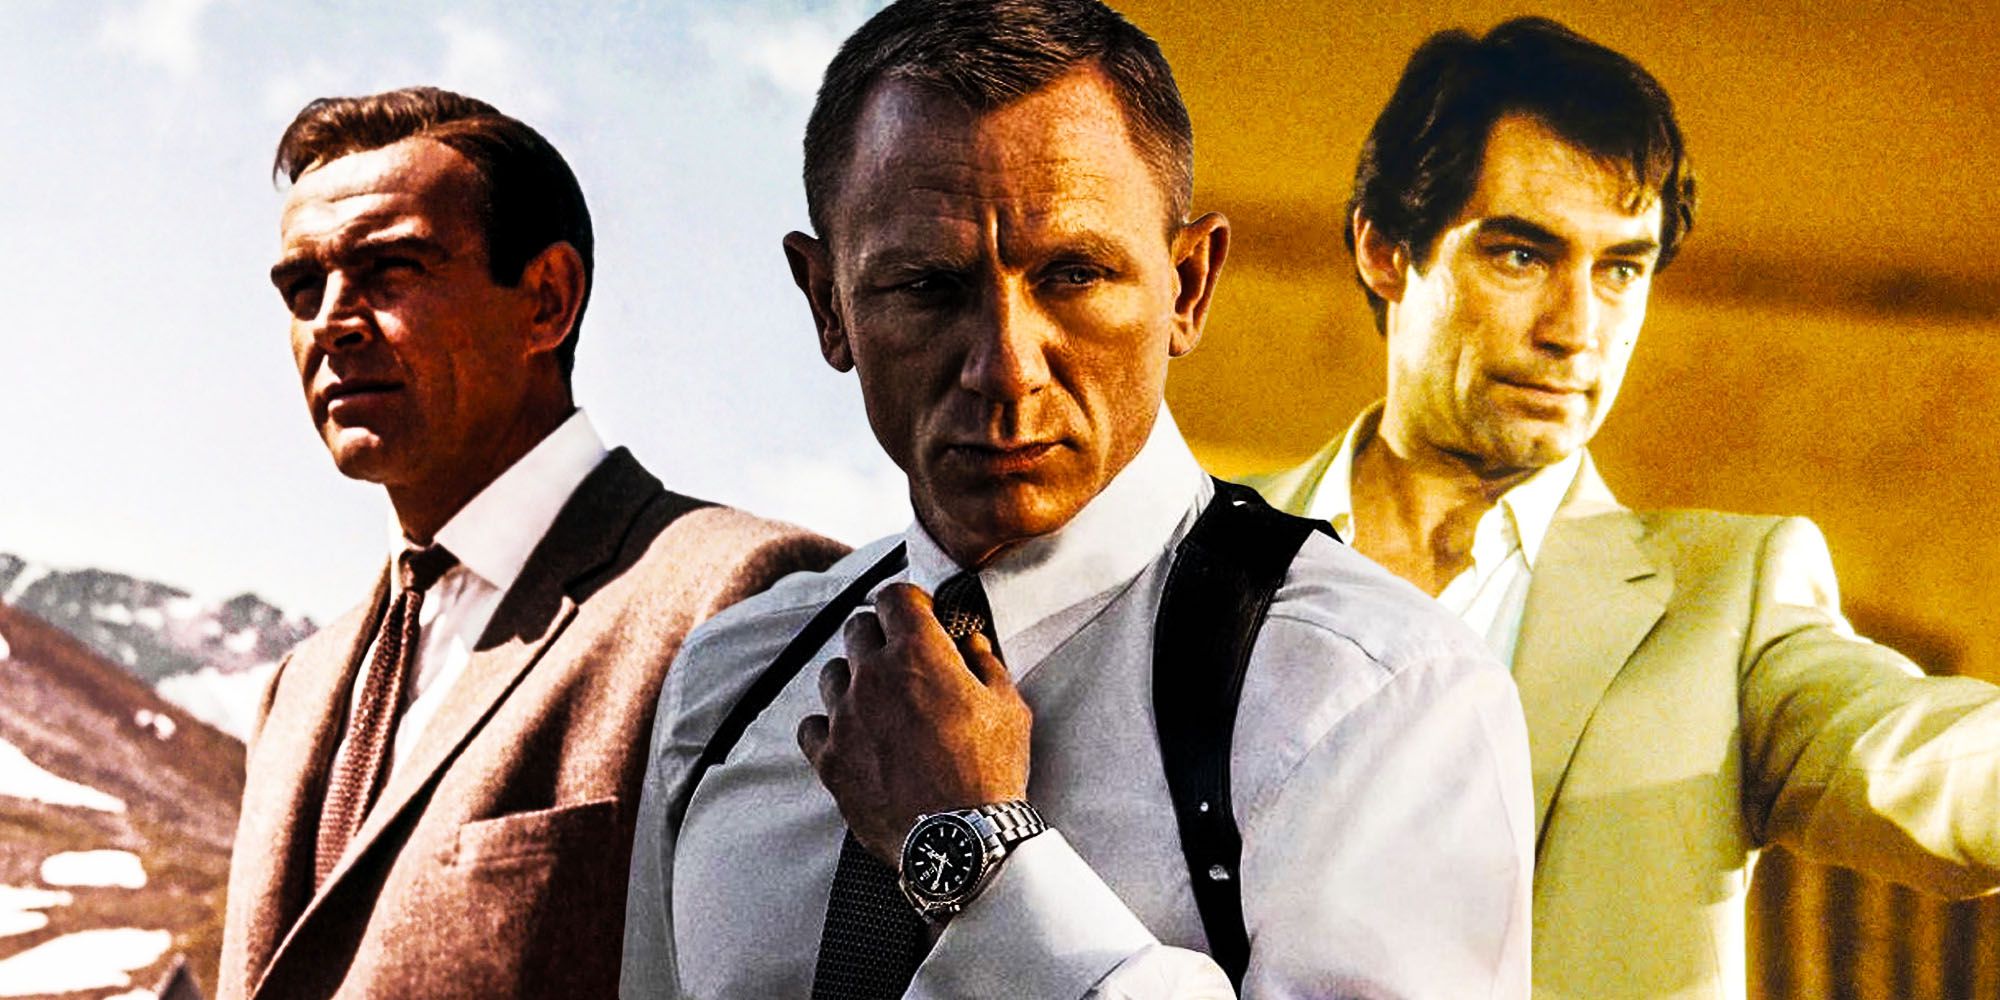 El director de Casino Royale extraña el humor de las películas antiguas de James Bond